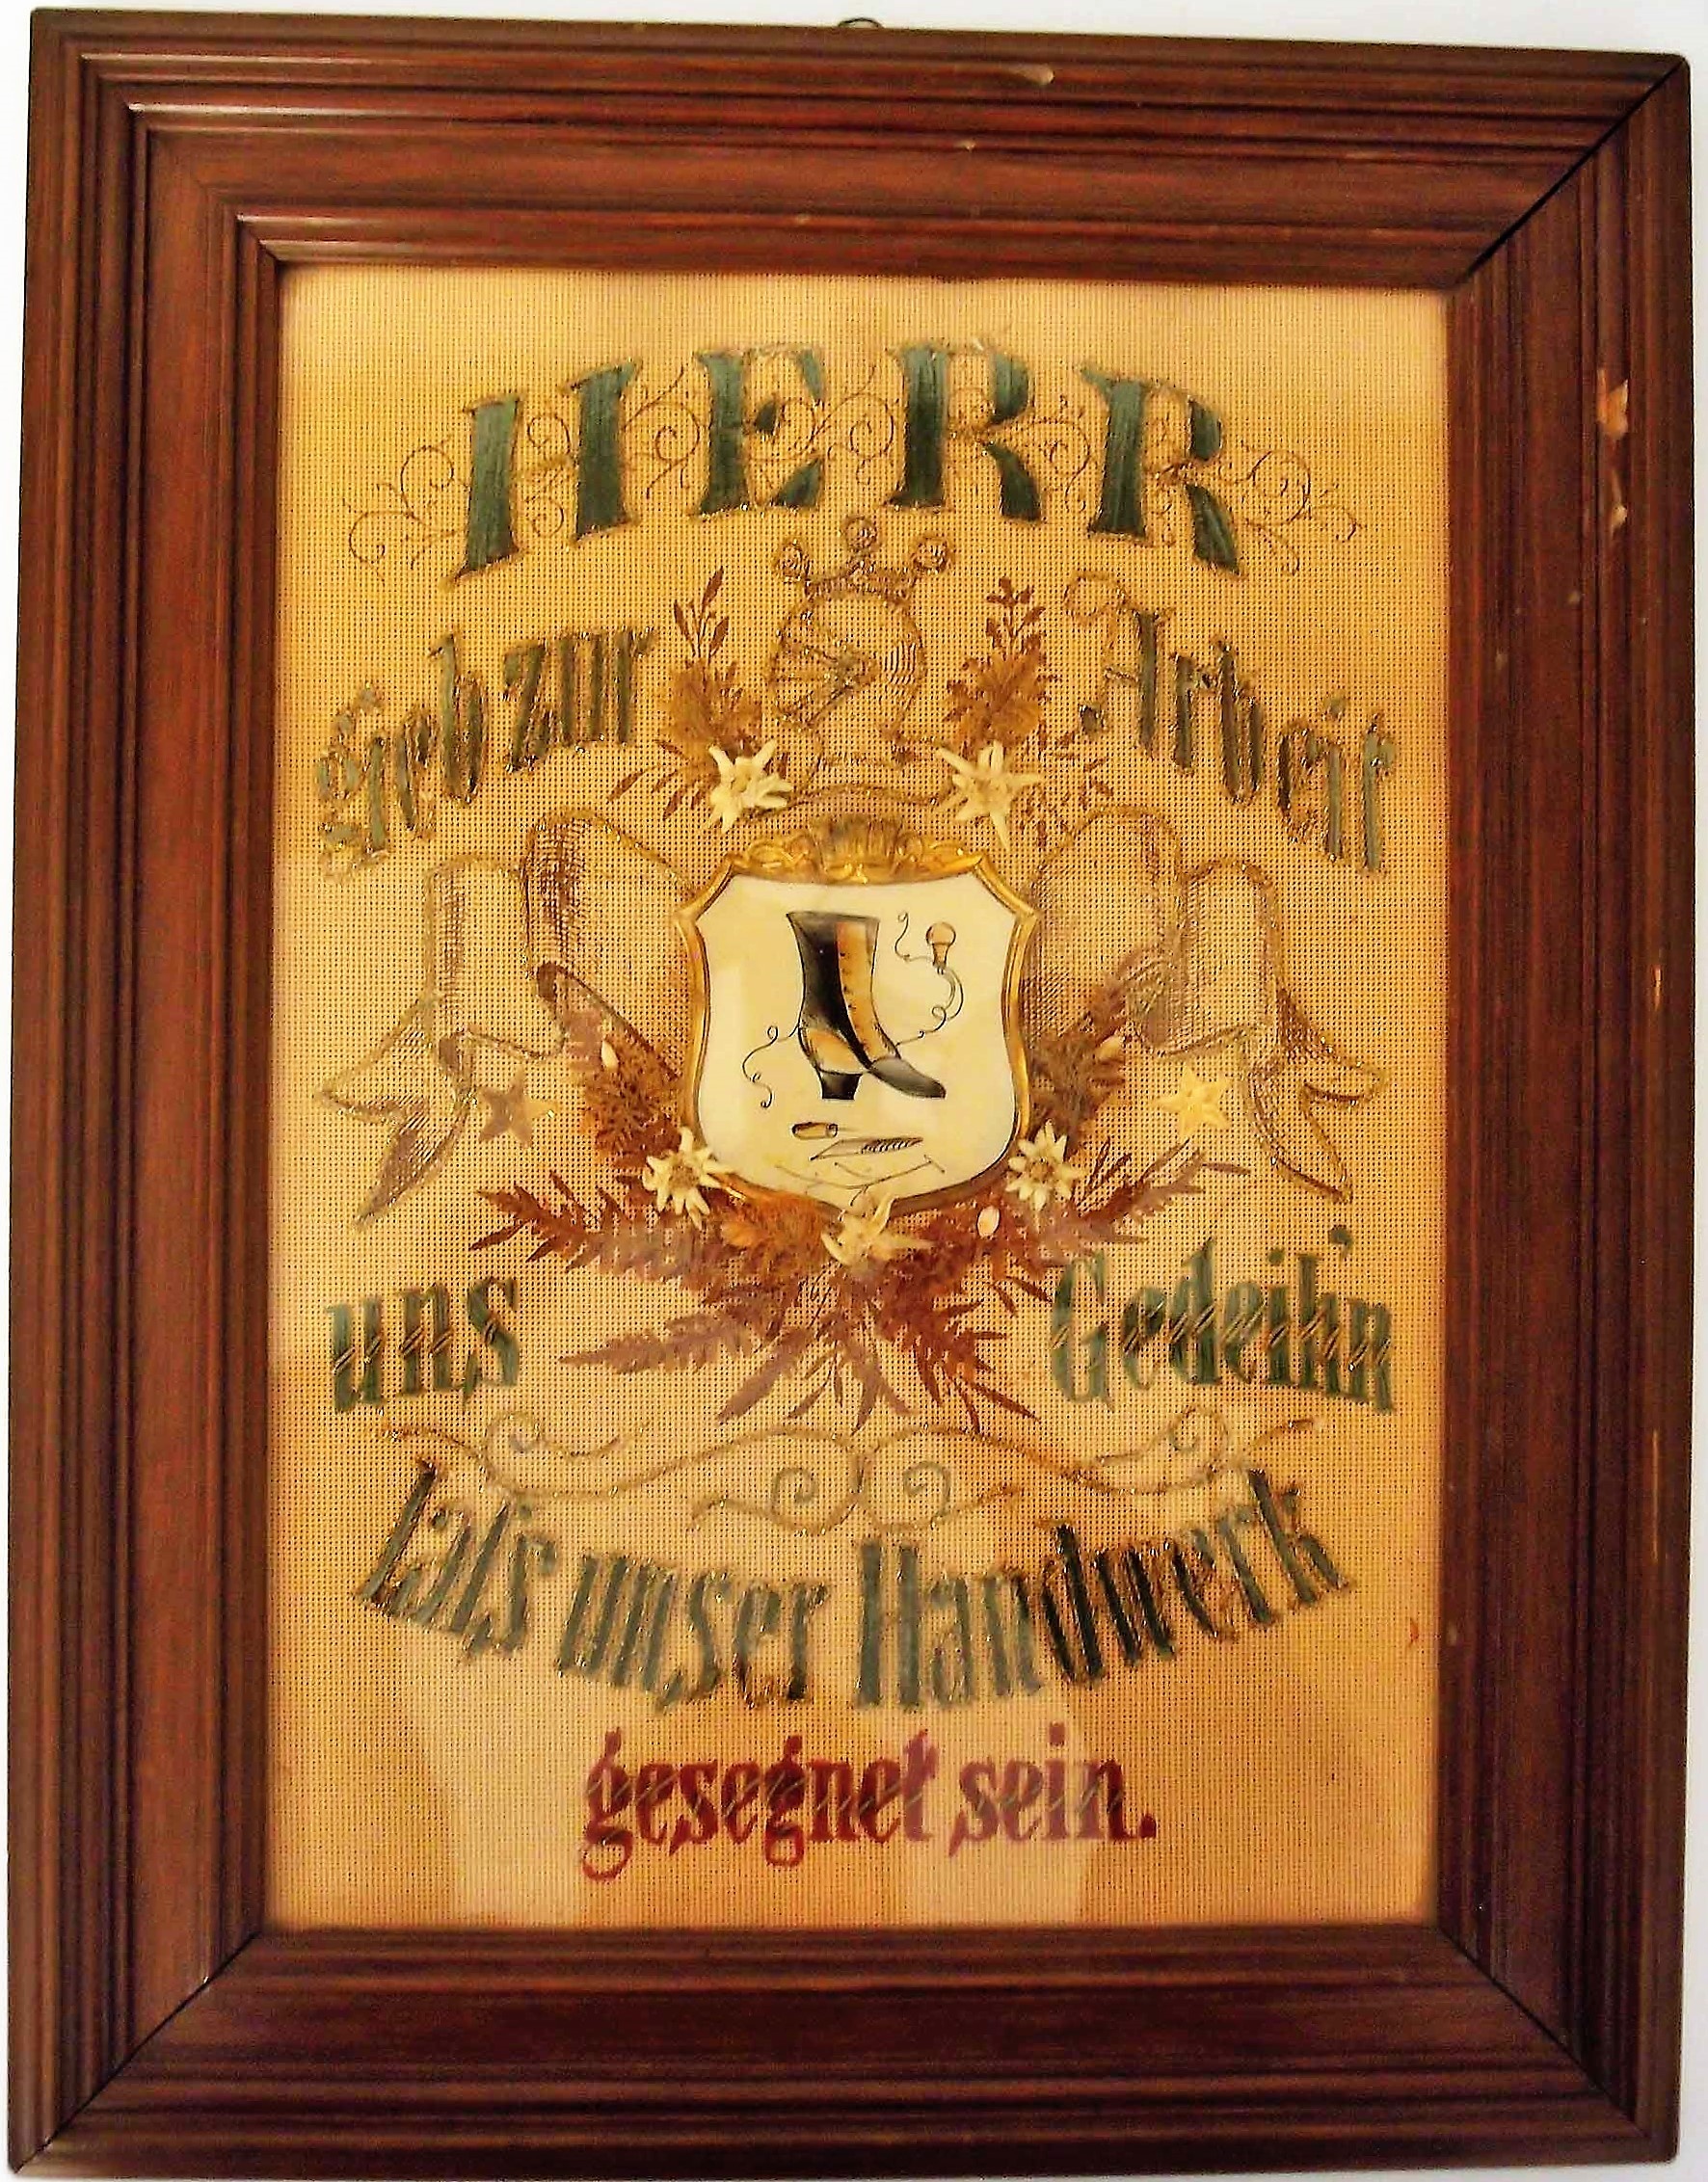 Handwerkerspruch im Rahmen (Museum für Stadtgeschichte Templin CC BY-NC-SA)